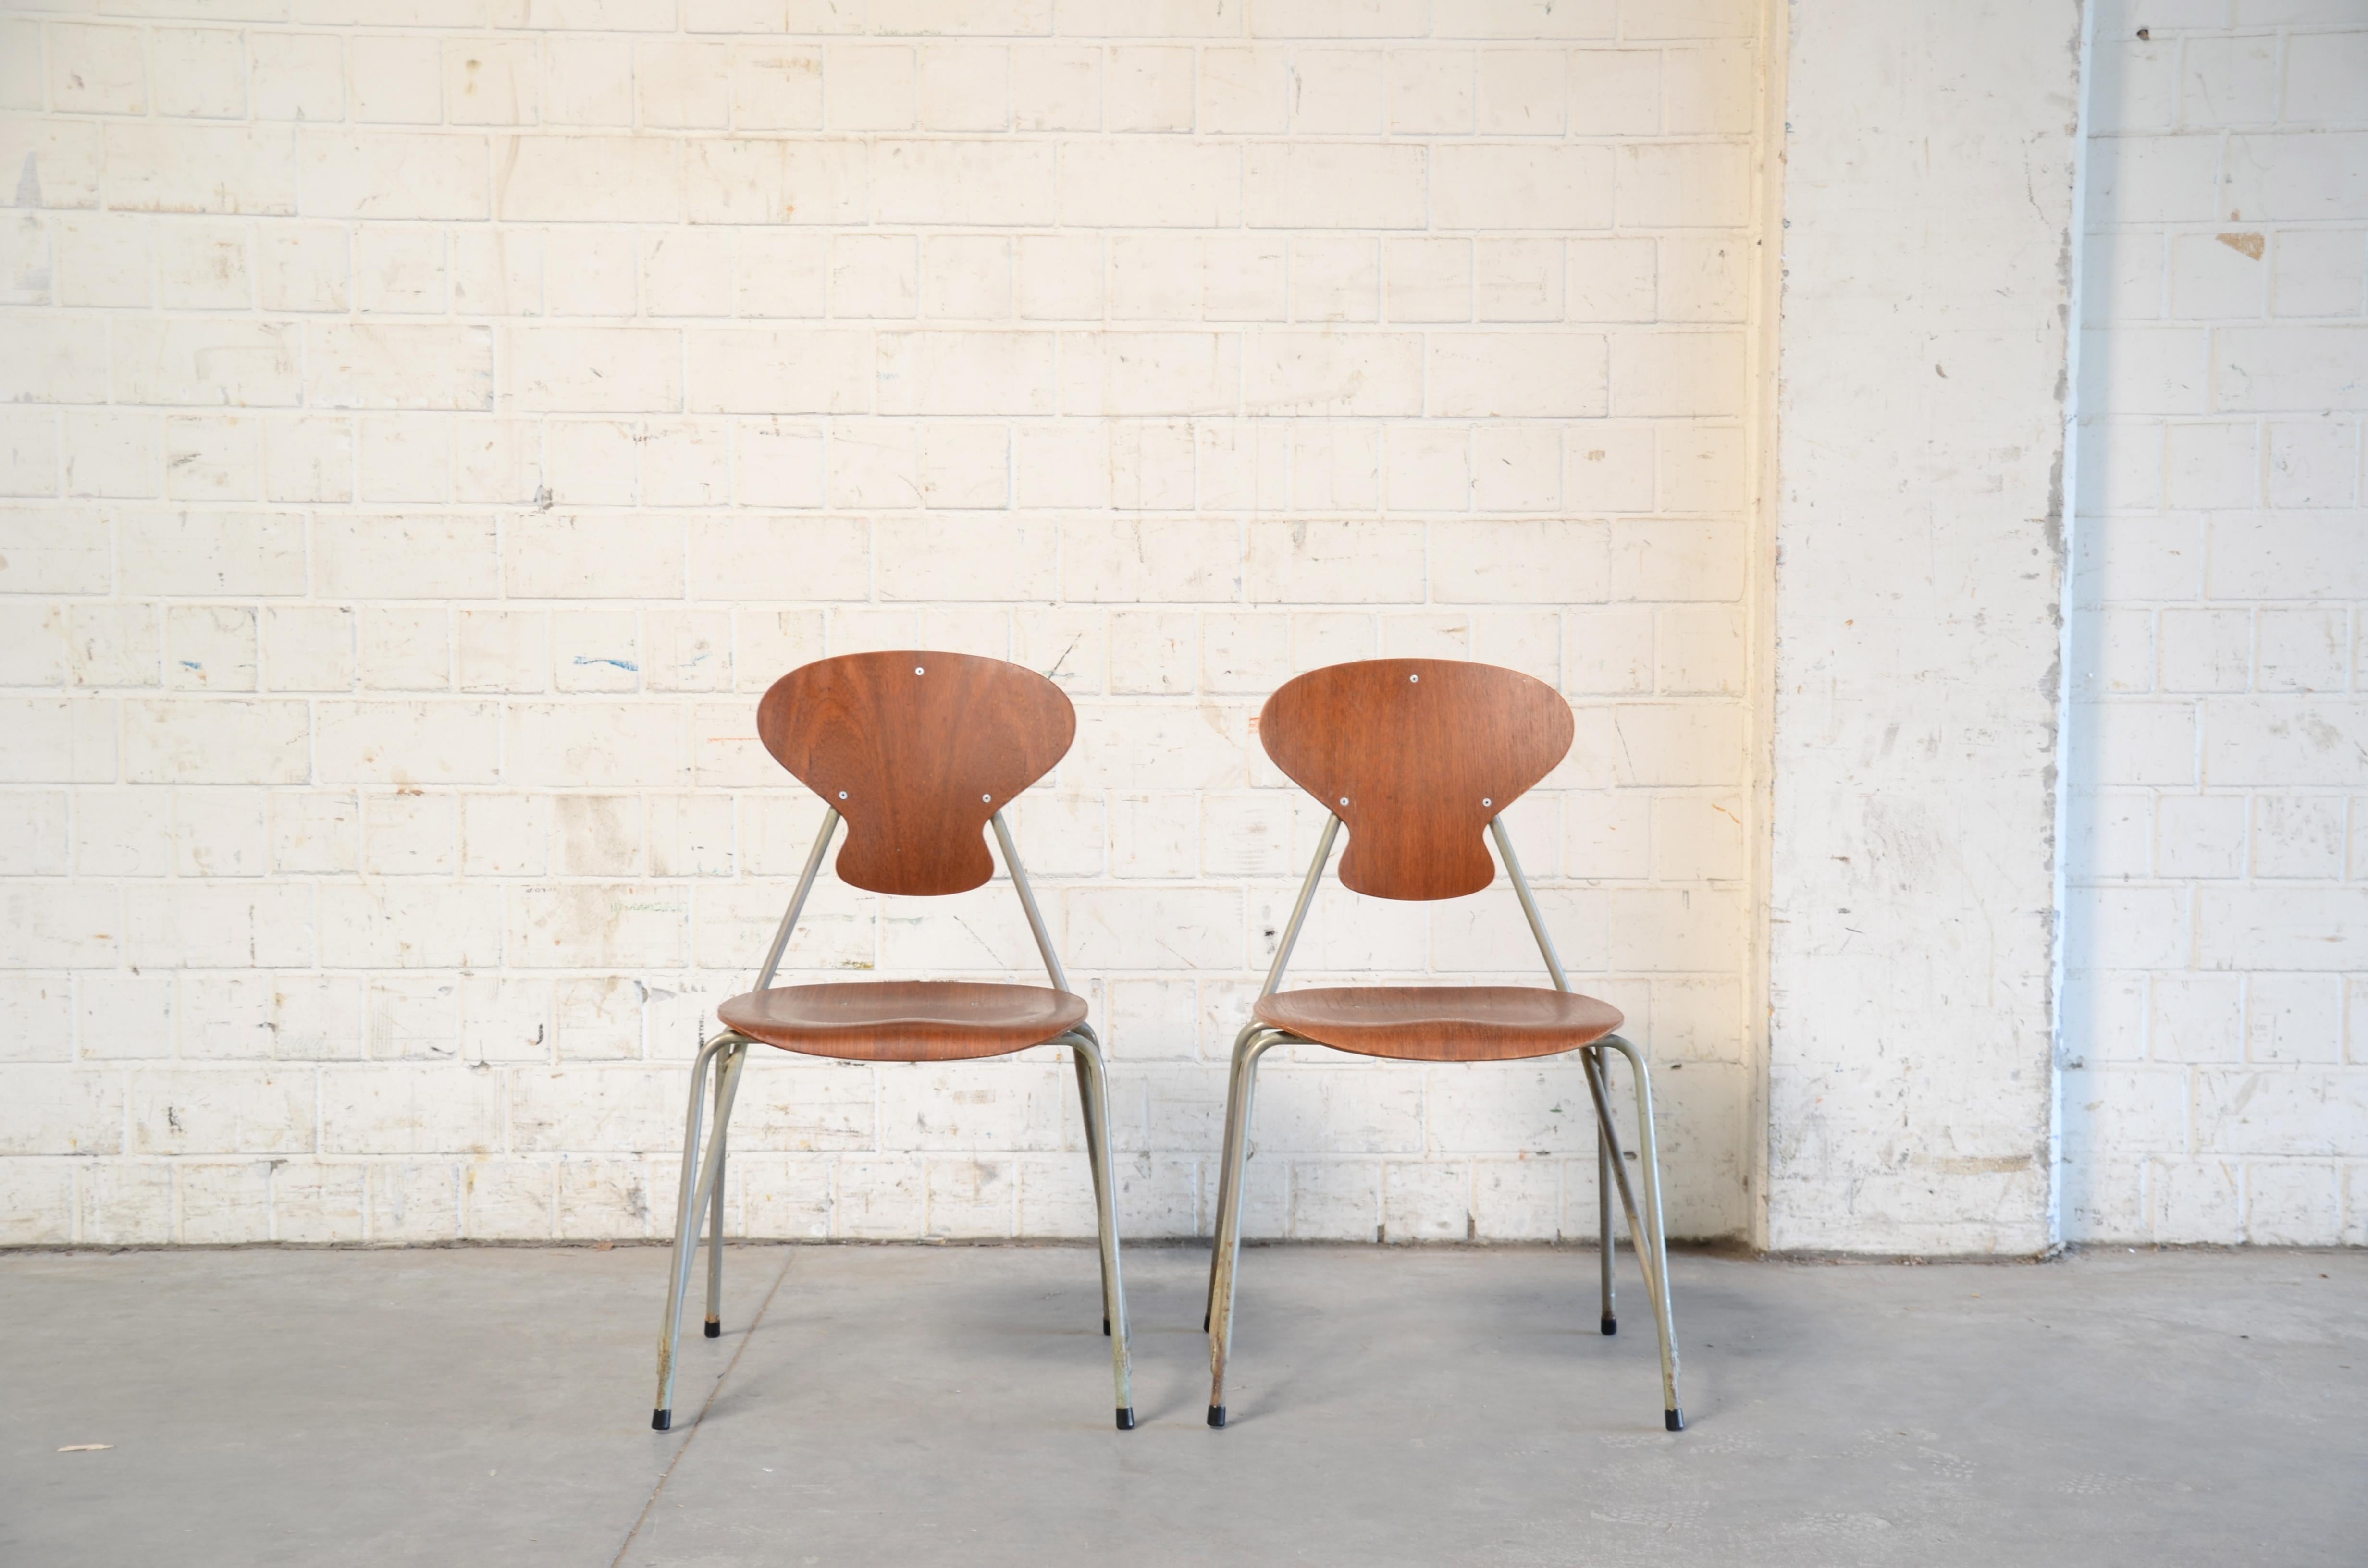 
Vintage teak chairs by Steen Eiler Rasmussen & Kai Lyngfeldt Larsen for Danbork.
Designed 1954 for the school in Rungsted Denmark.
Set of 2.